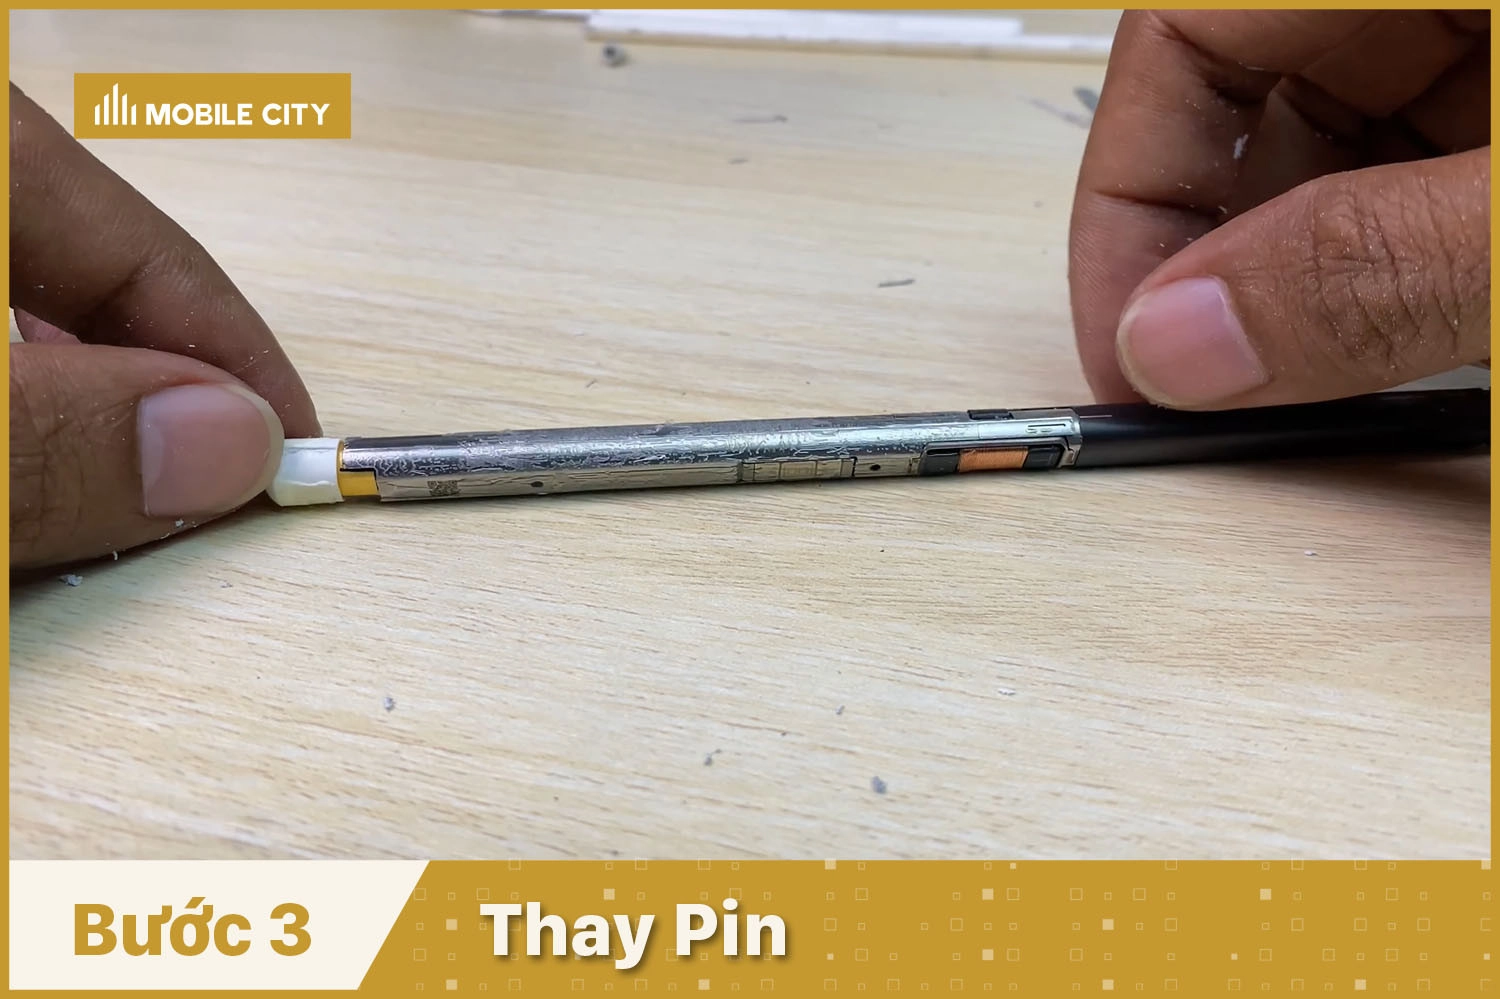 Thay Pin cho Apple Pencil 2